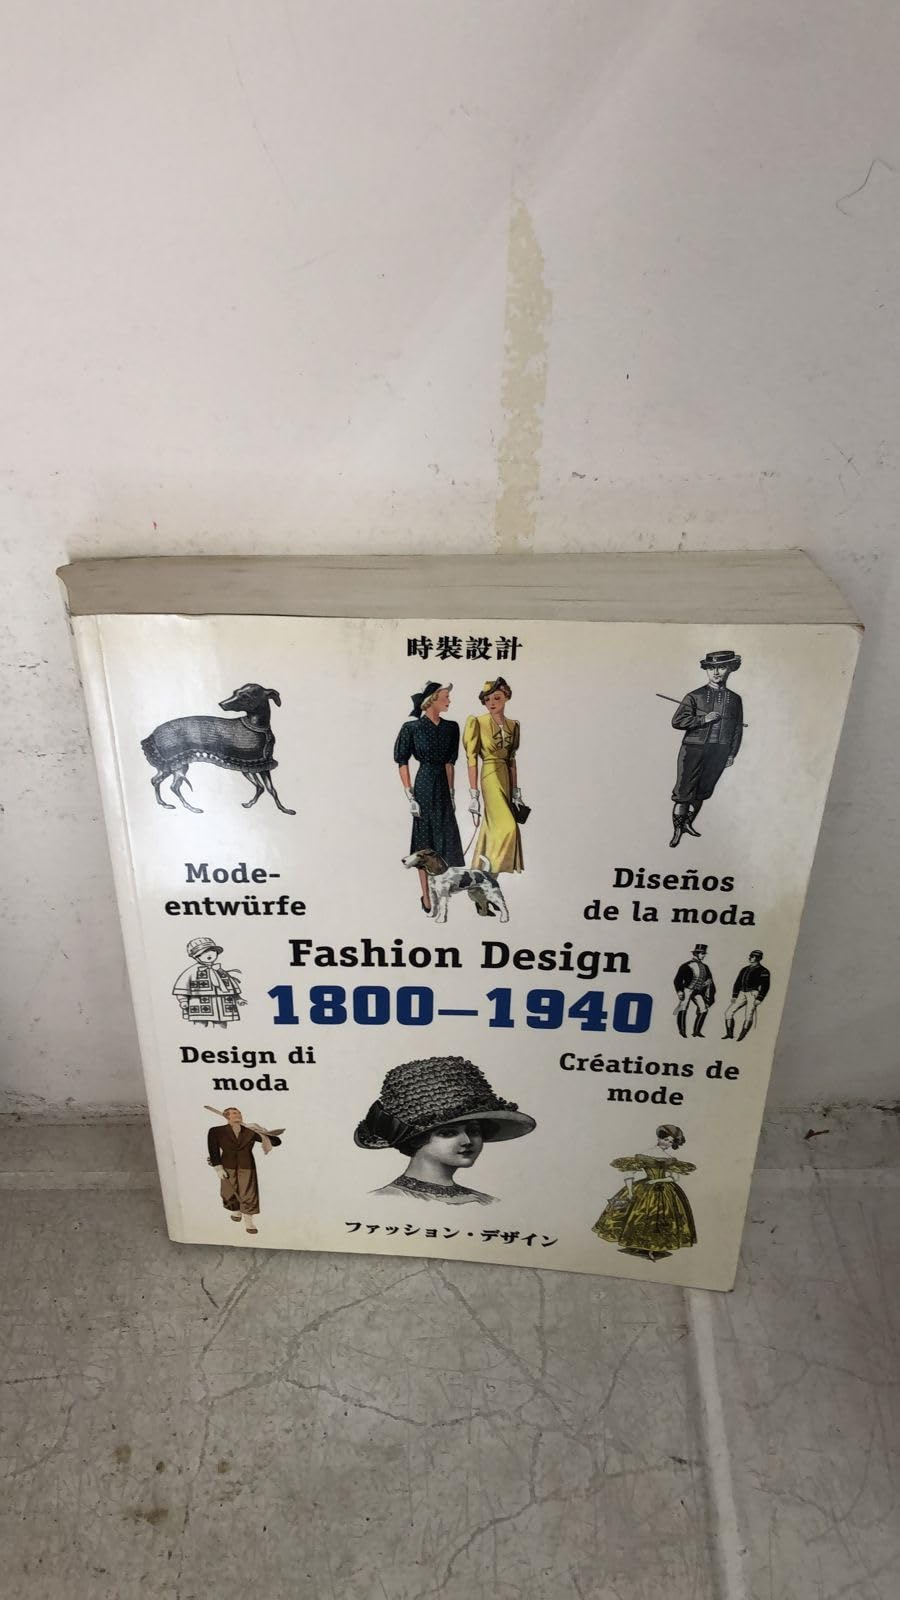 Fashion design : Créations de mode : Diseños de la moda : Modeentwürfe : Design in moda 1800-1940